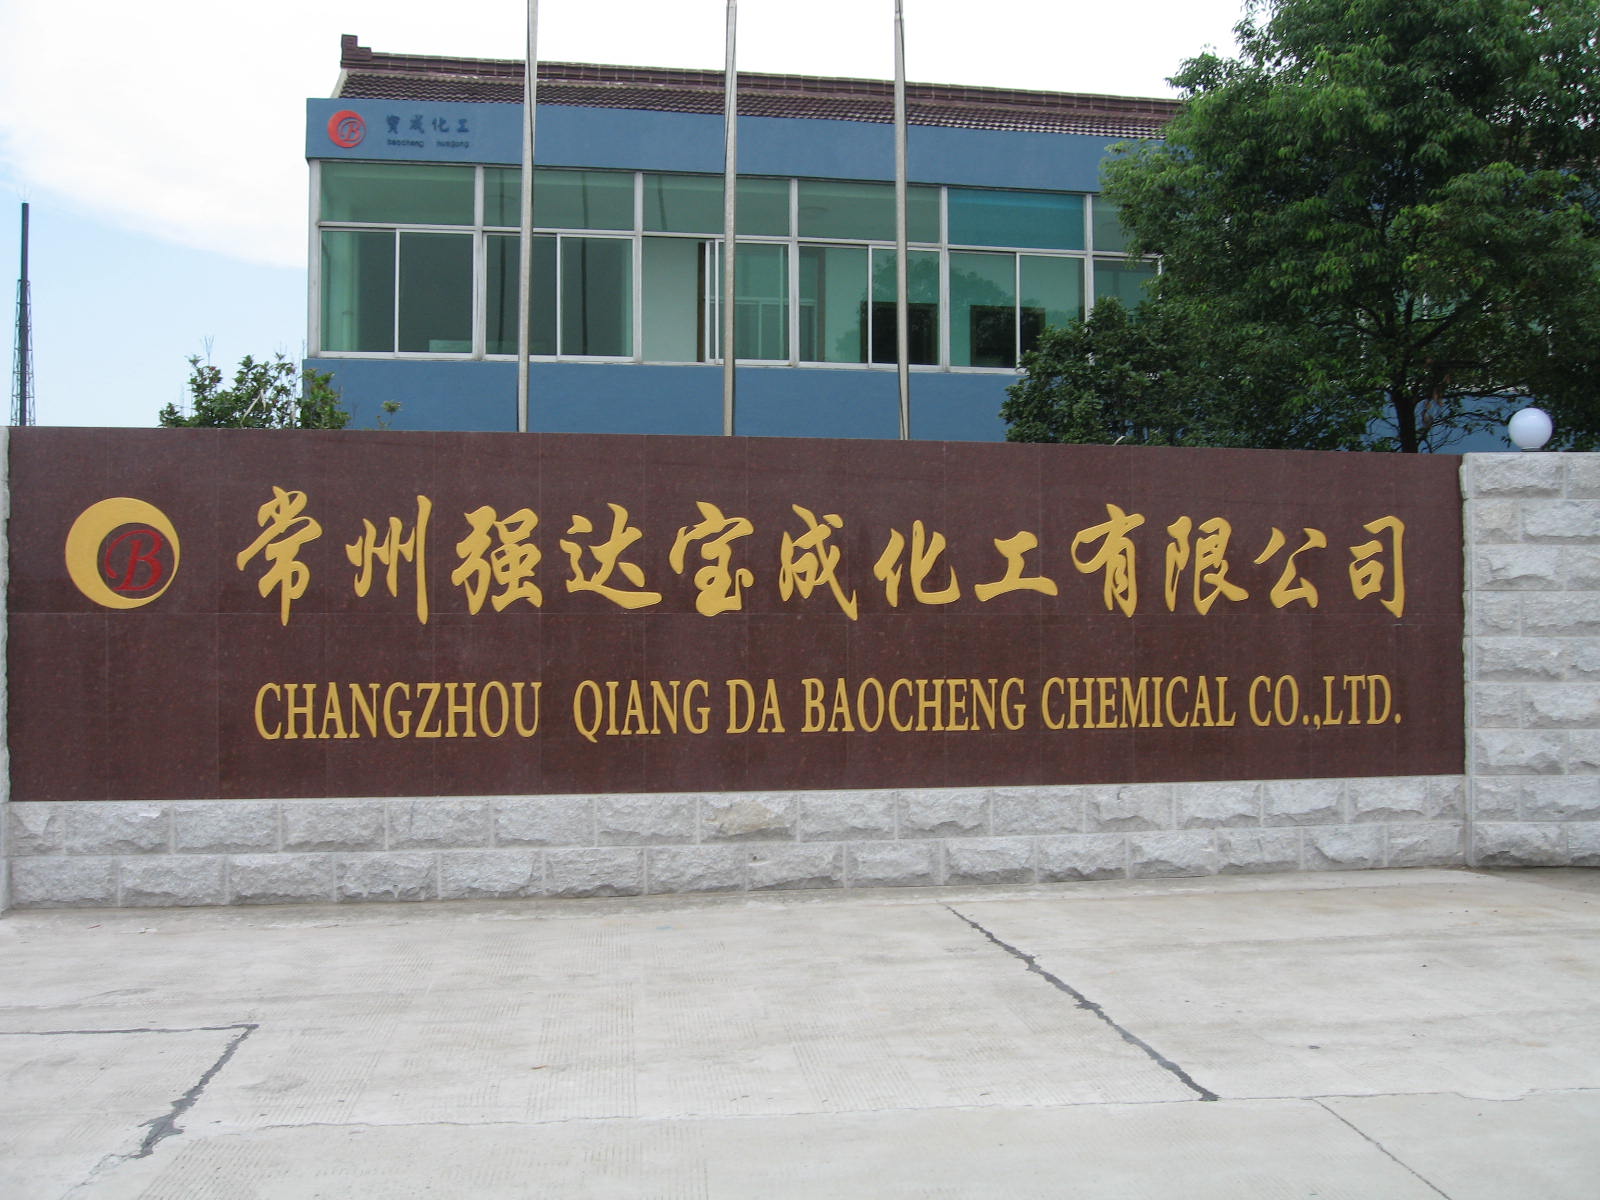 Changzhou Chontech Baocheng Chemical Co., Ltd.